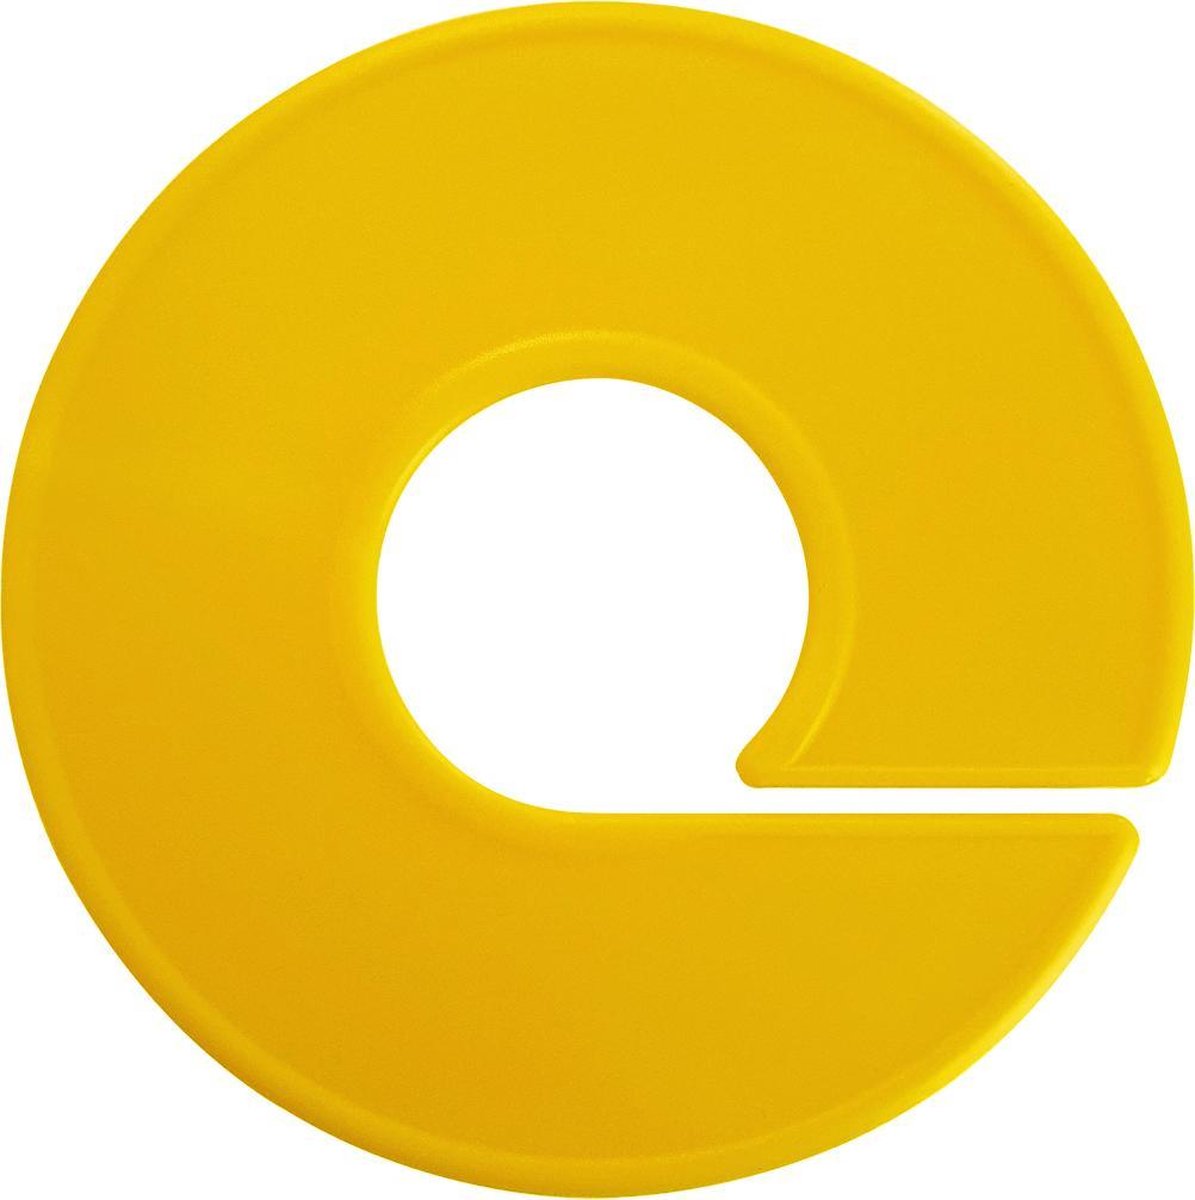 Maatring / confectiering / maatschijf / maataanduiders geel rond 11cm onbedrukt per 10 stuks